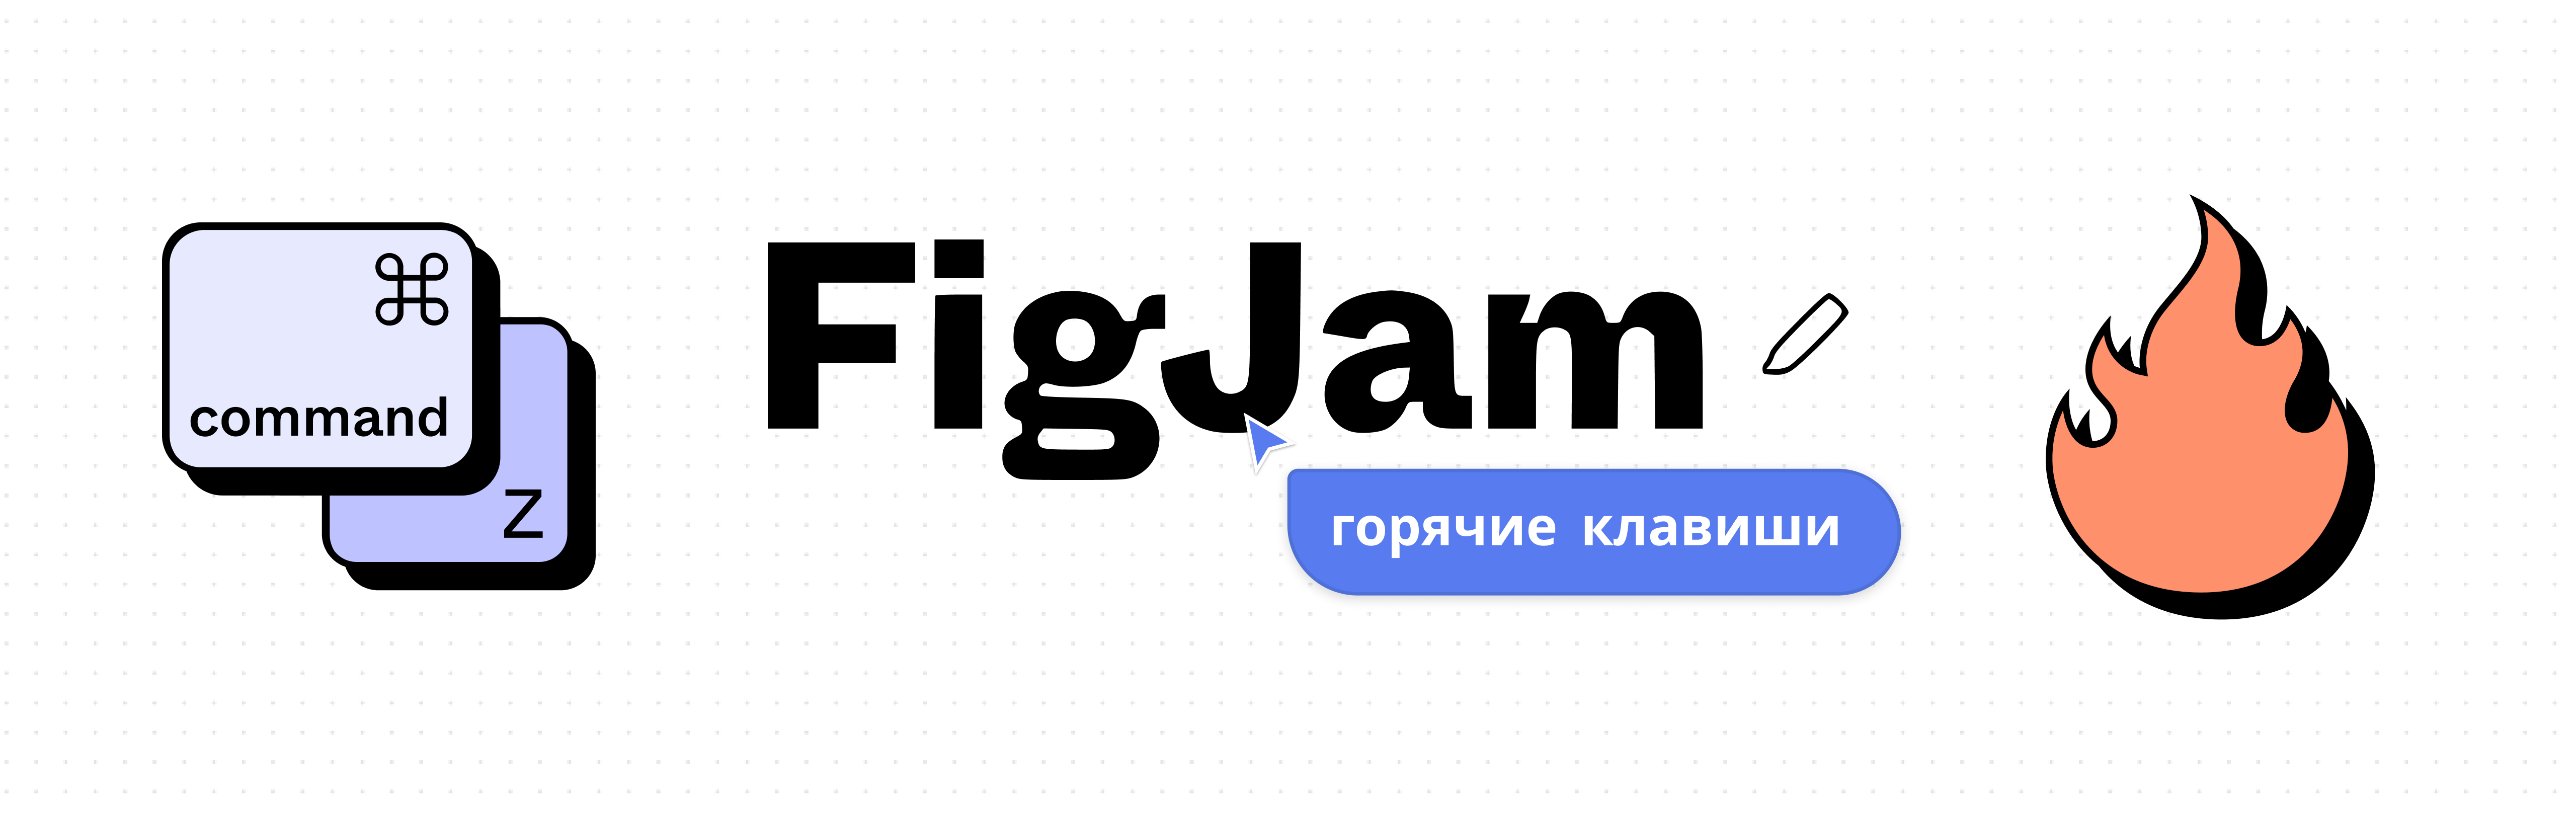 В помощь дизайнеру, часть 2: горячие клавиши FigJam